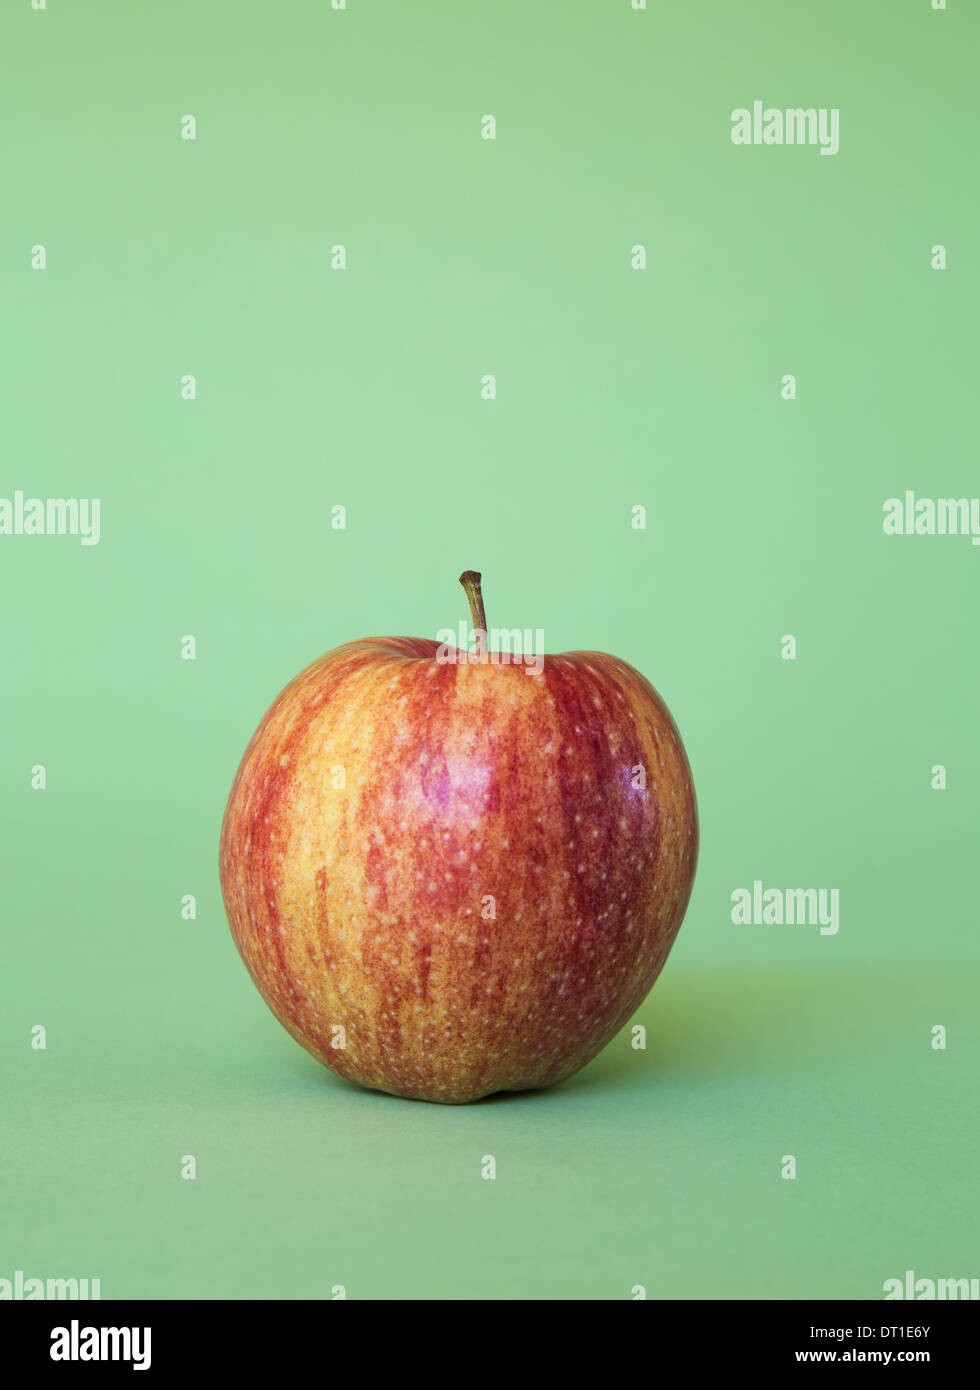 Honey Crisp apple on green background Stock Photo